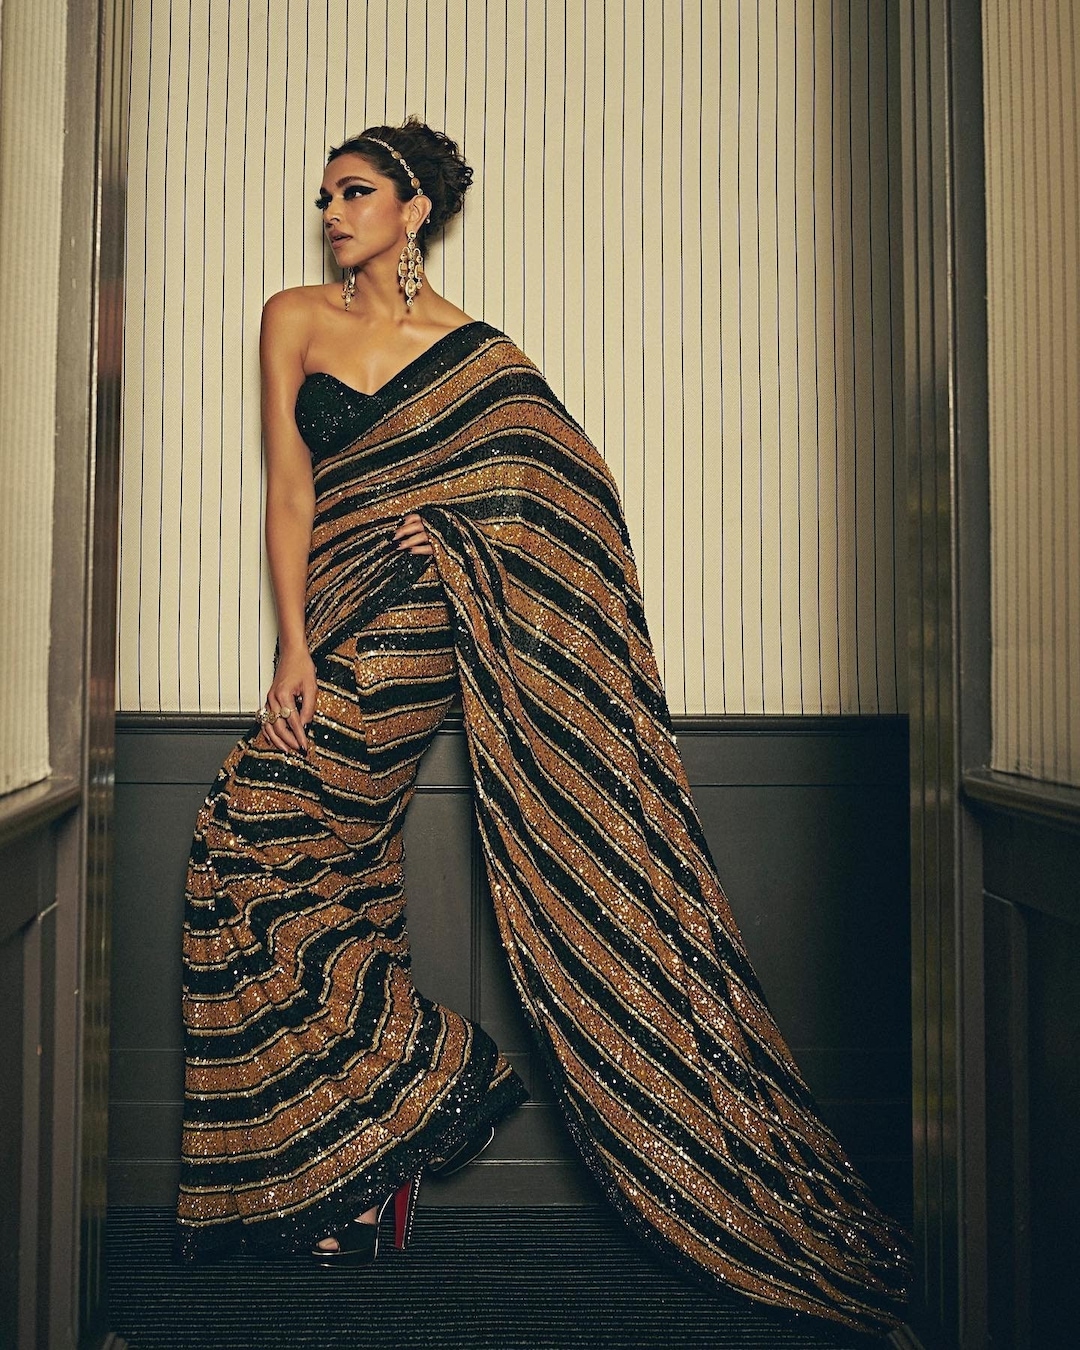 Deepika Padukone Cannes 2022 Saree/ Black Gold Sari/ Sequin